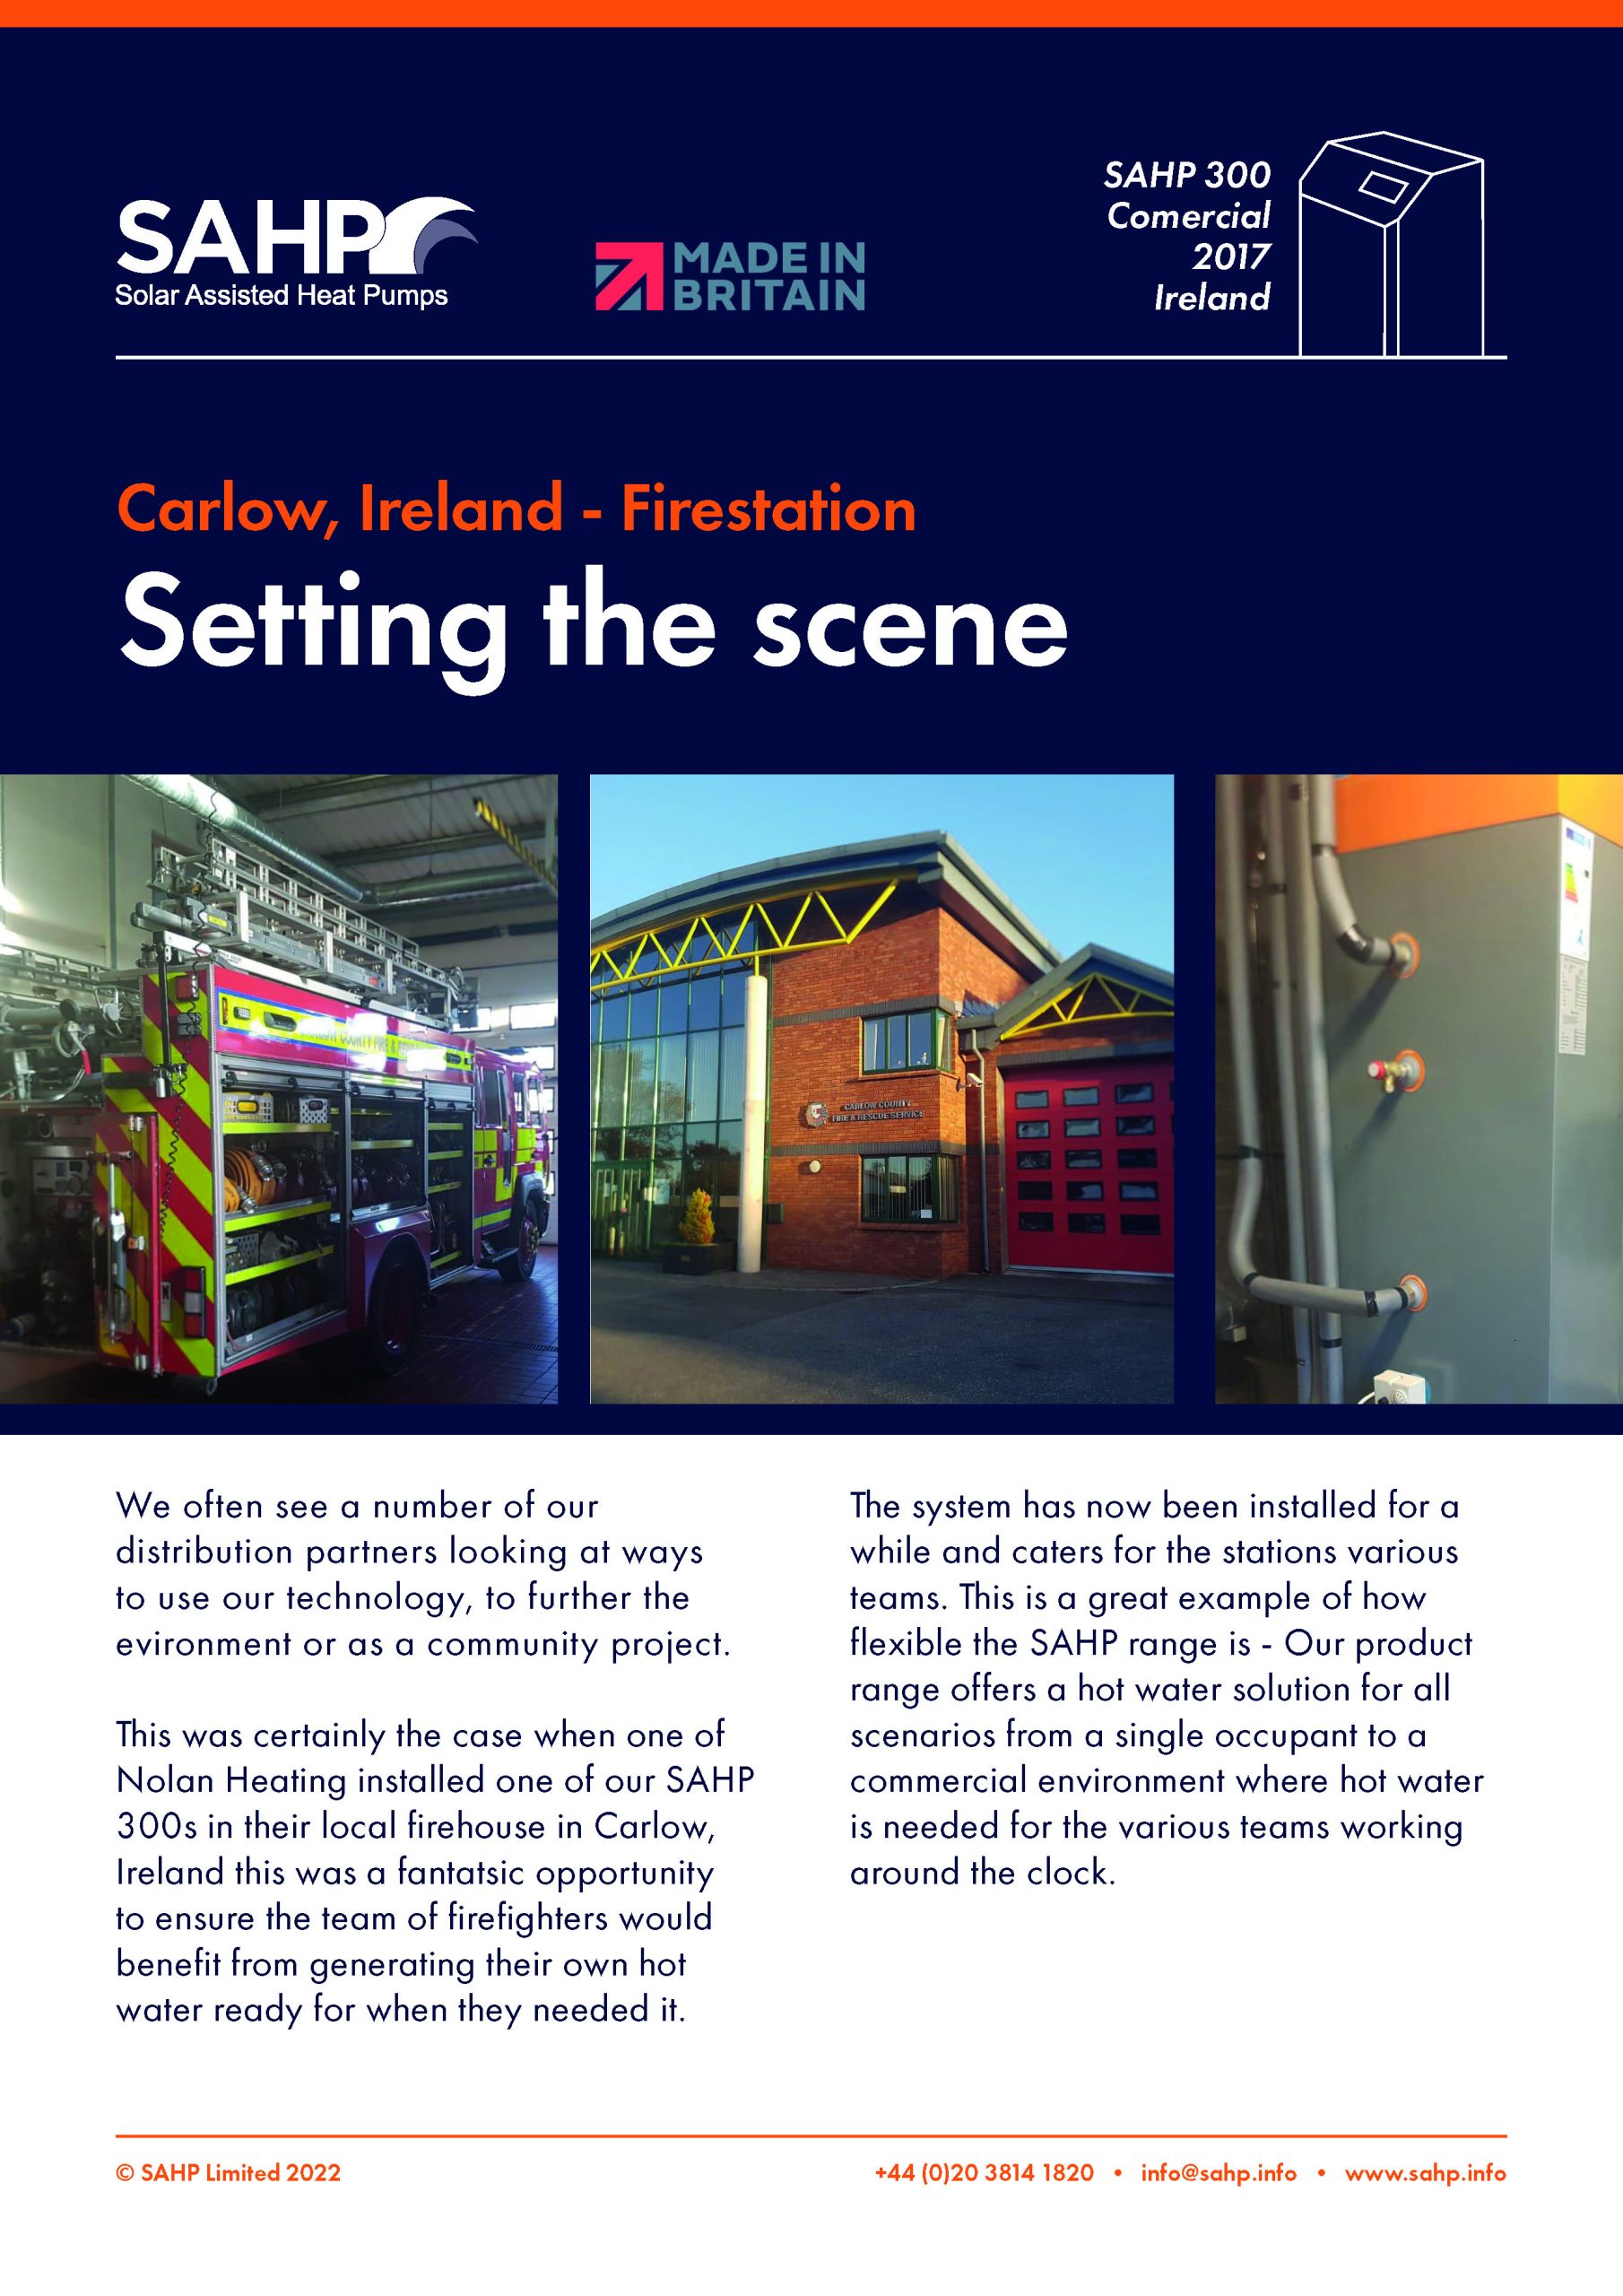 SAHP Feature sheet — Carlow Ireland Firestation